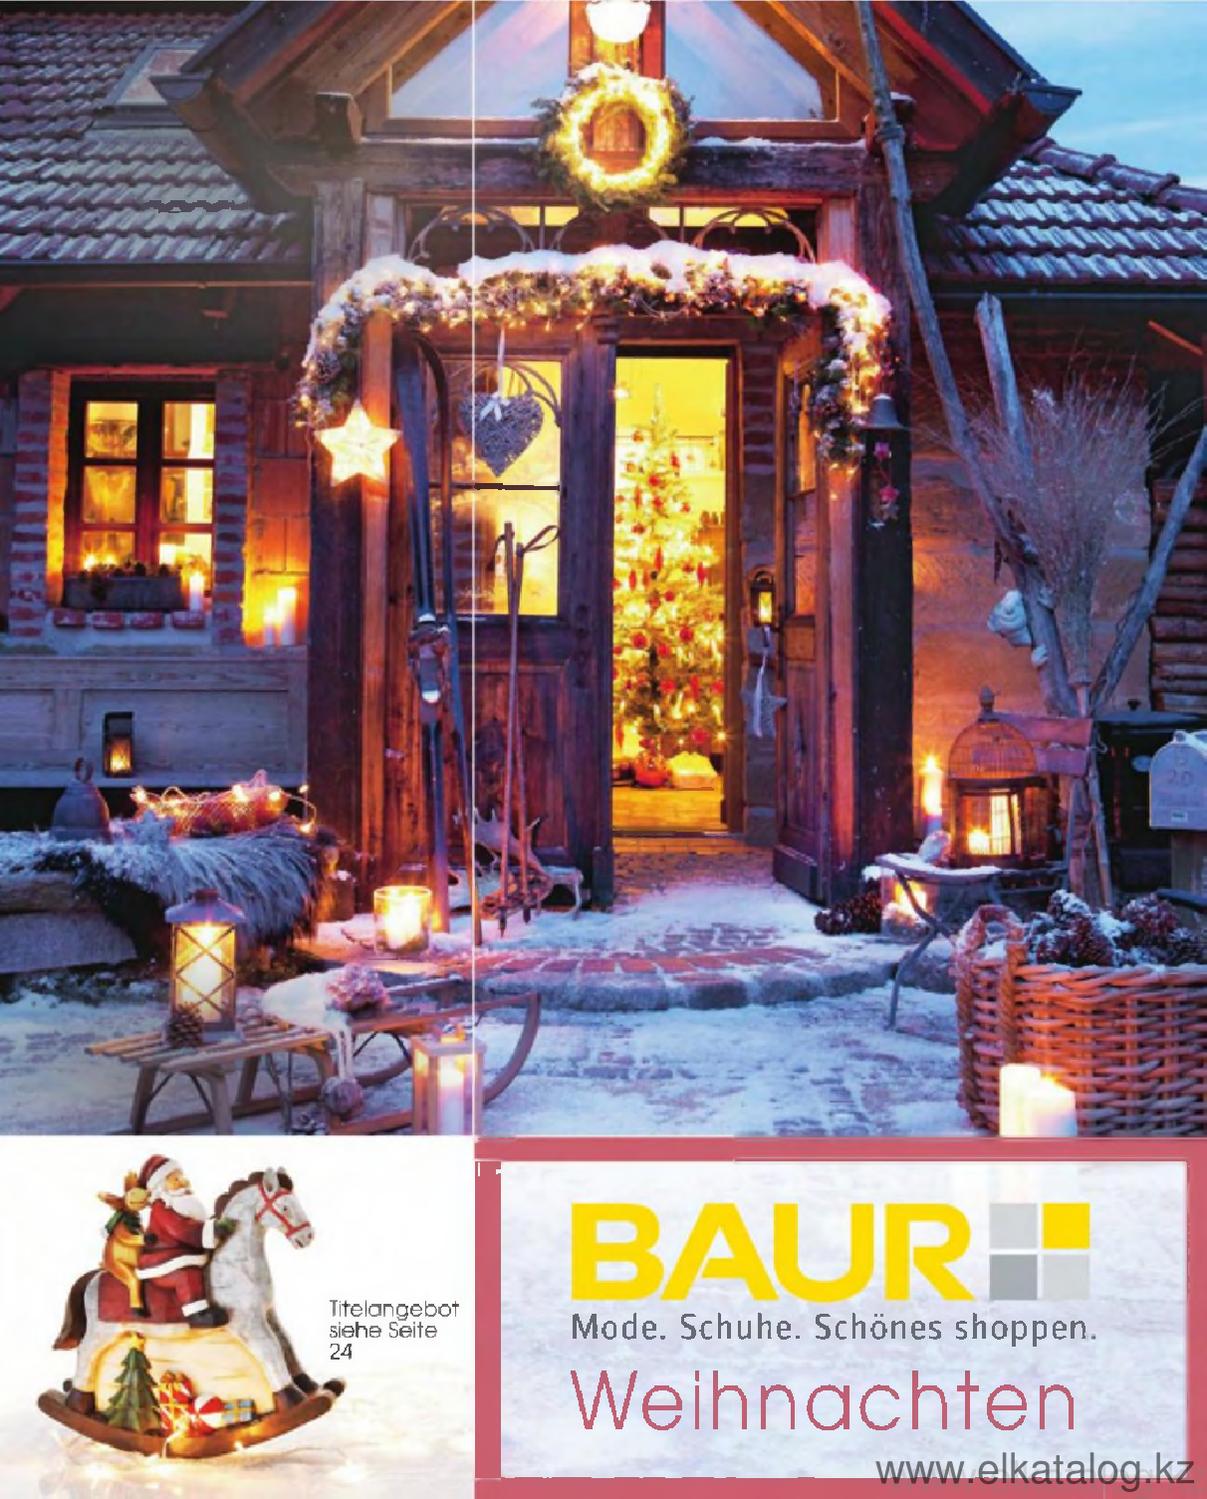 Schöne Terrassen Ideen Elegant Baur Weihnachten by Elkatalog issuu